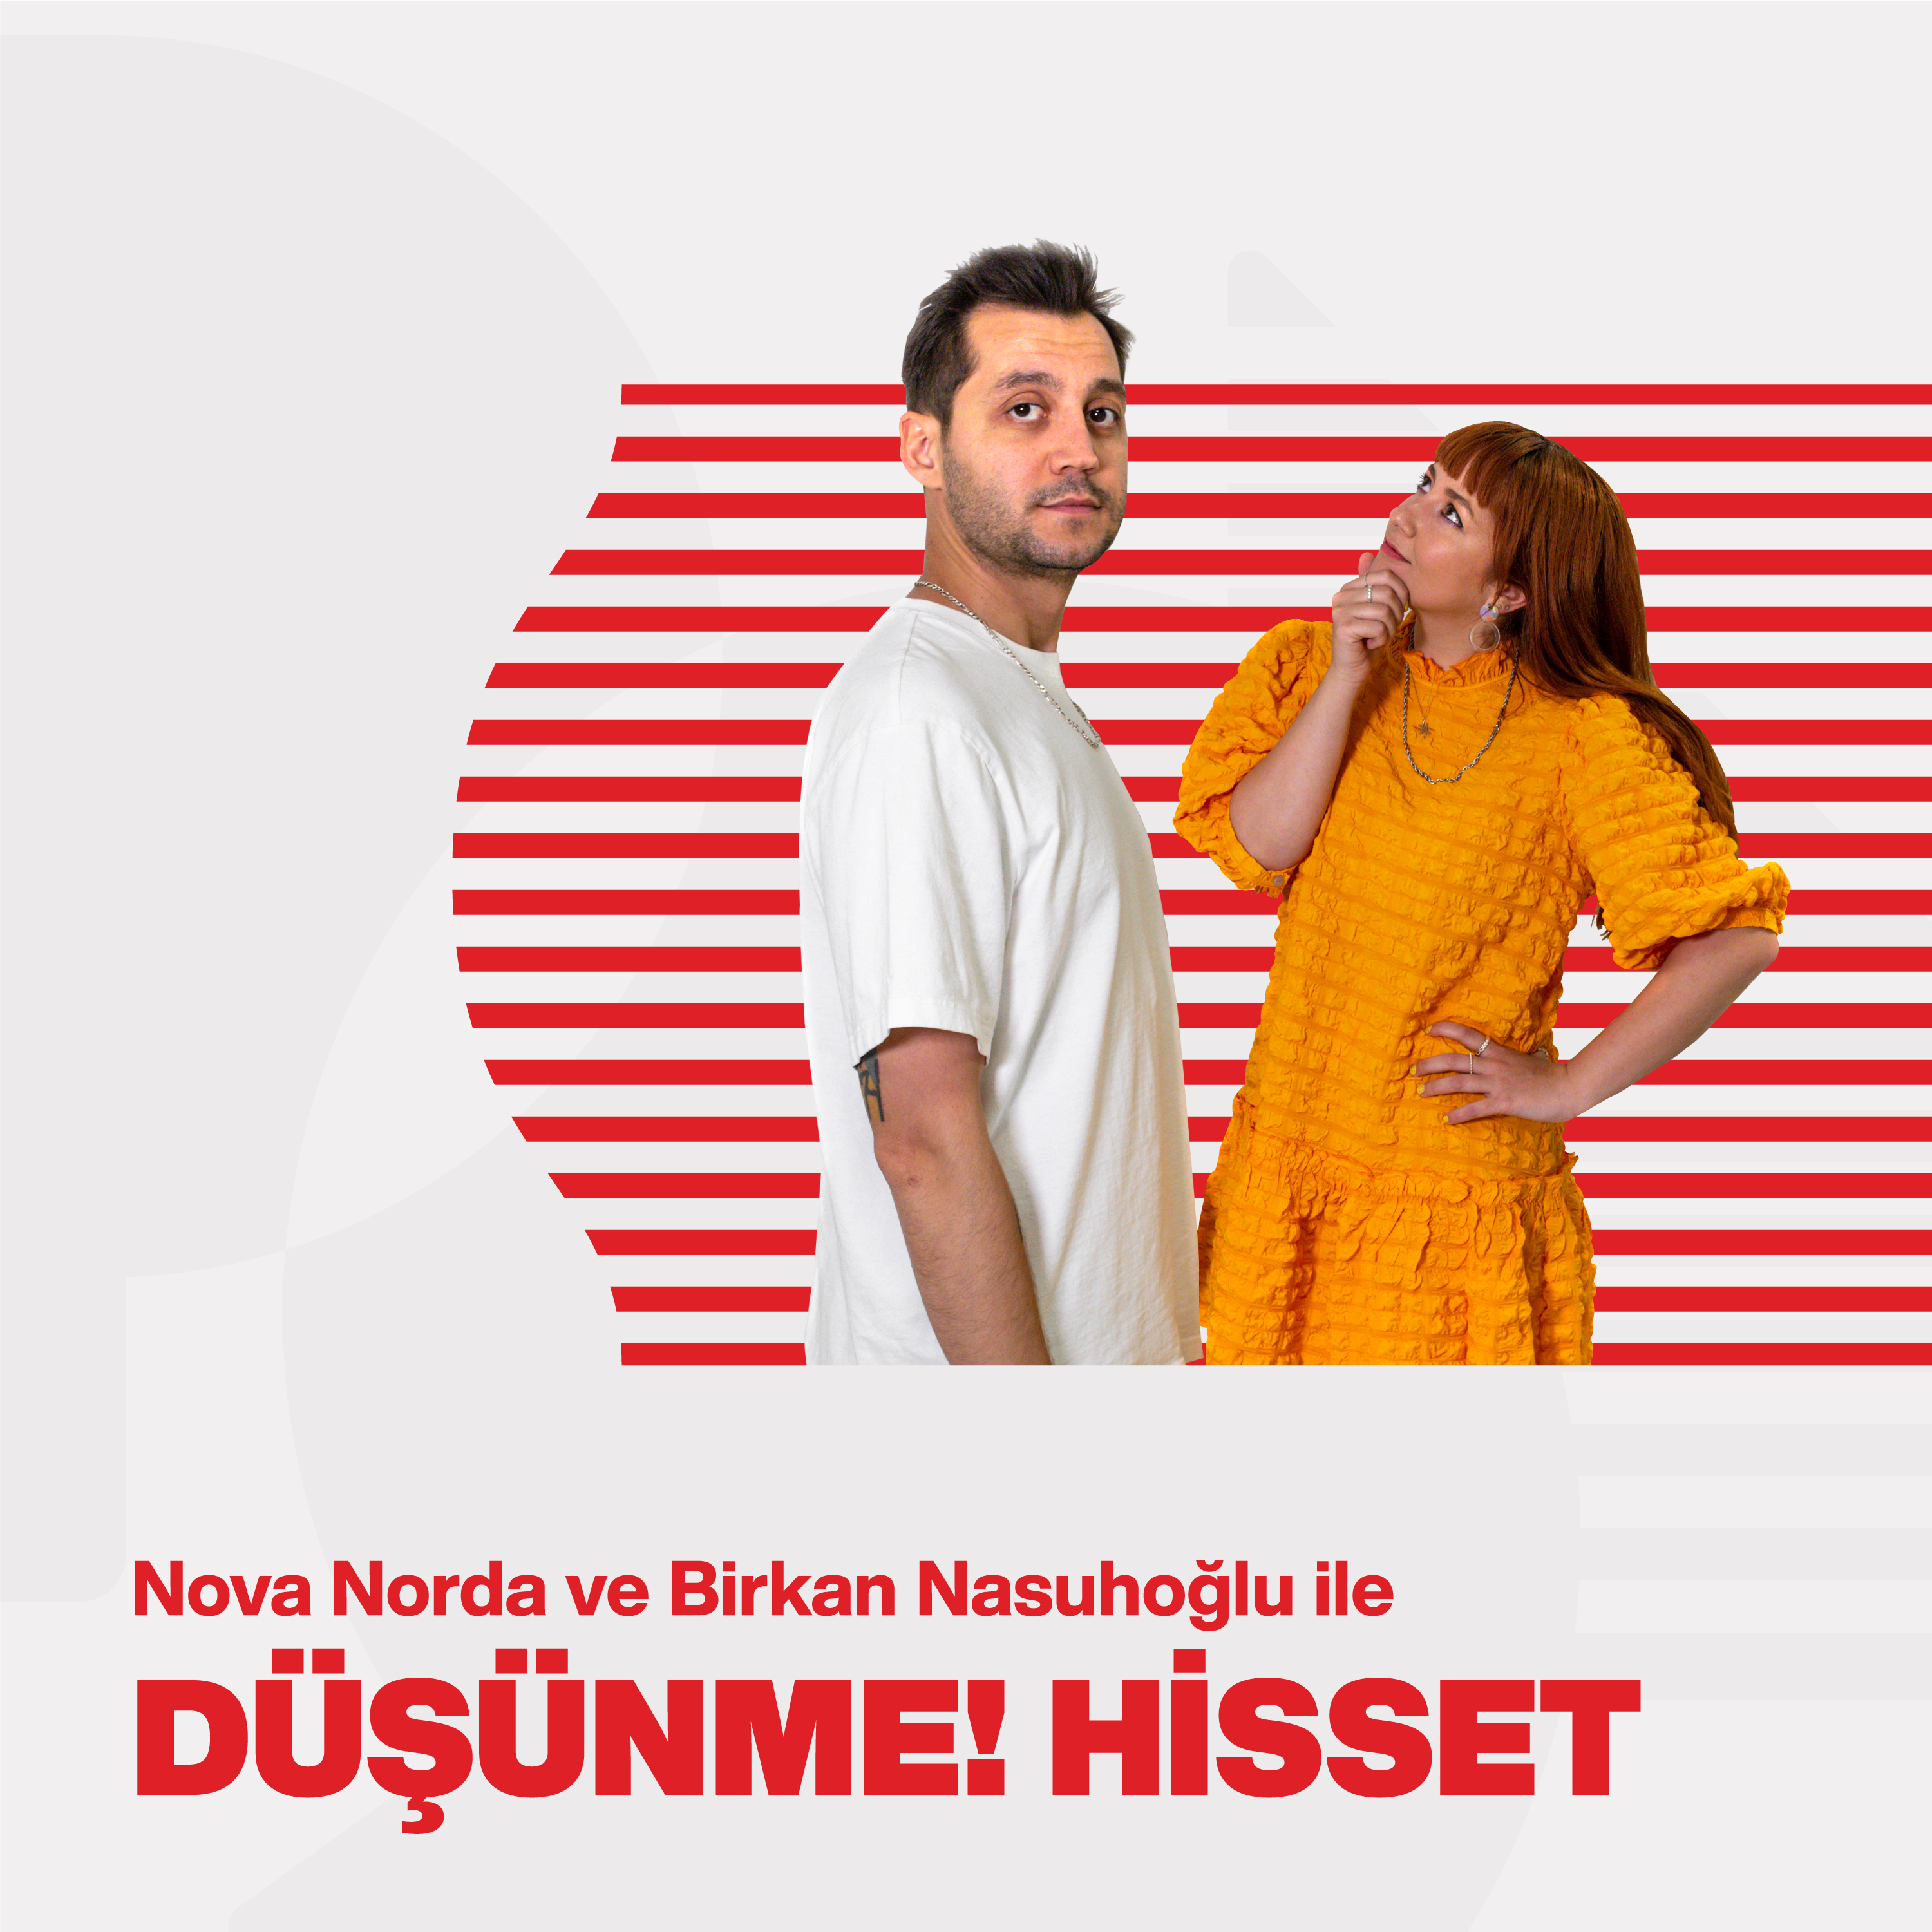 Vestel PSM Radyo / Nova Norda & Birkan Nasuhoğlu ile Düşünme! Hisset #14